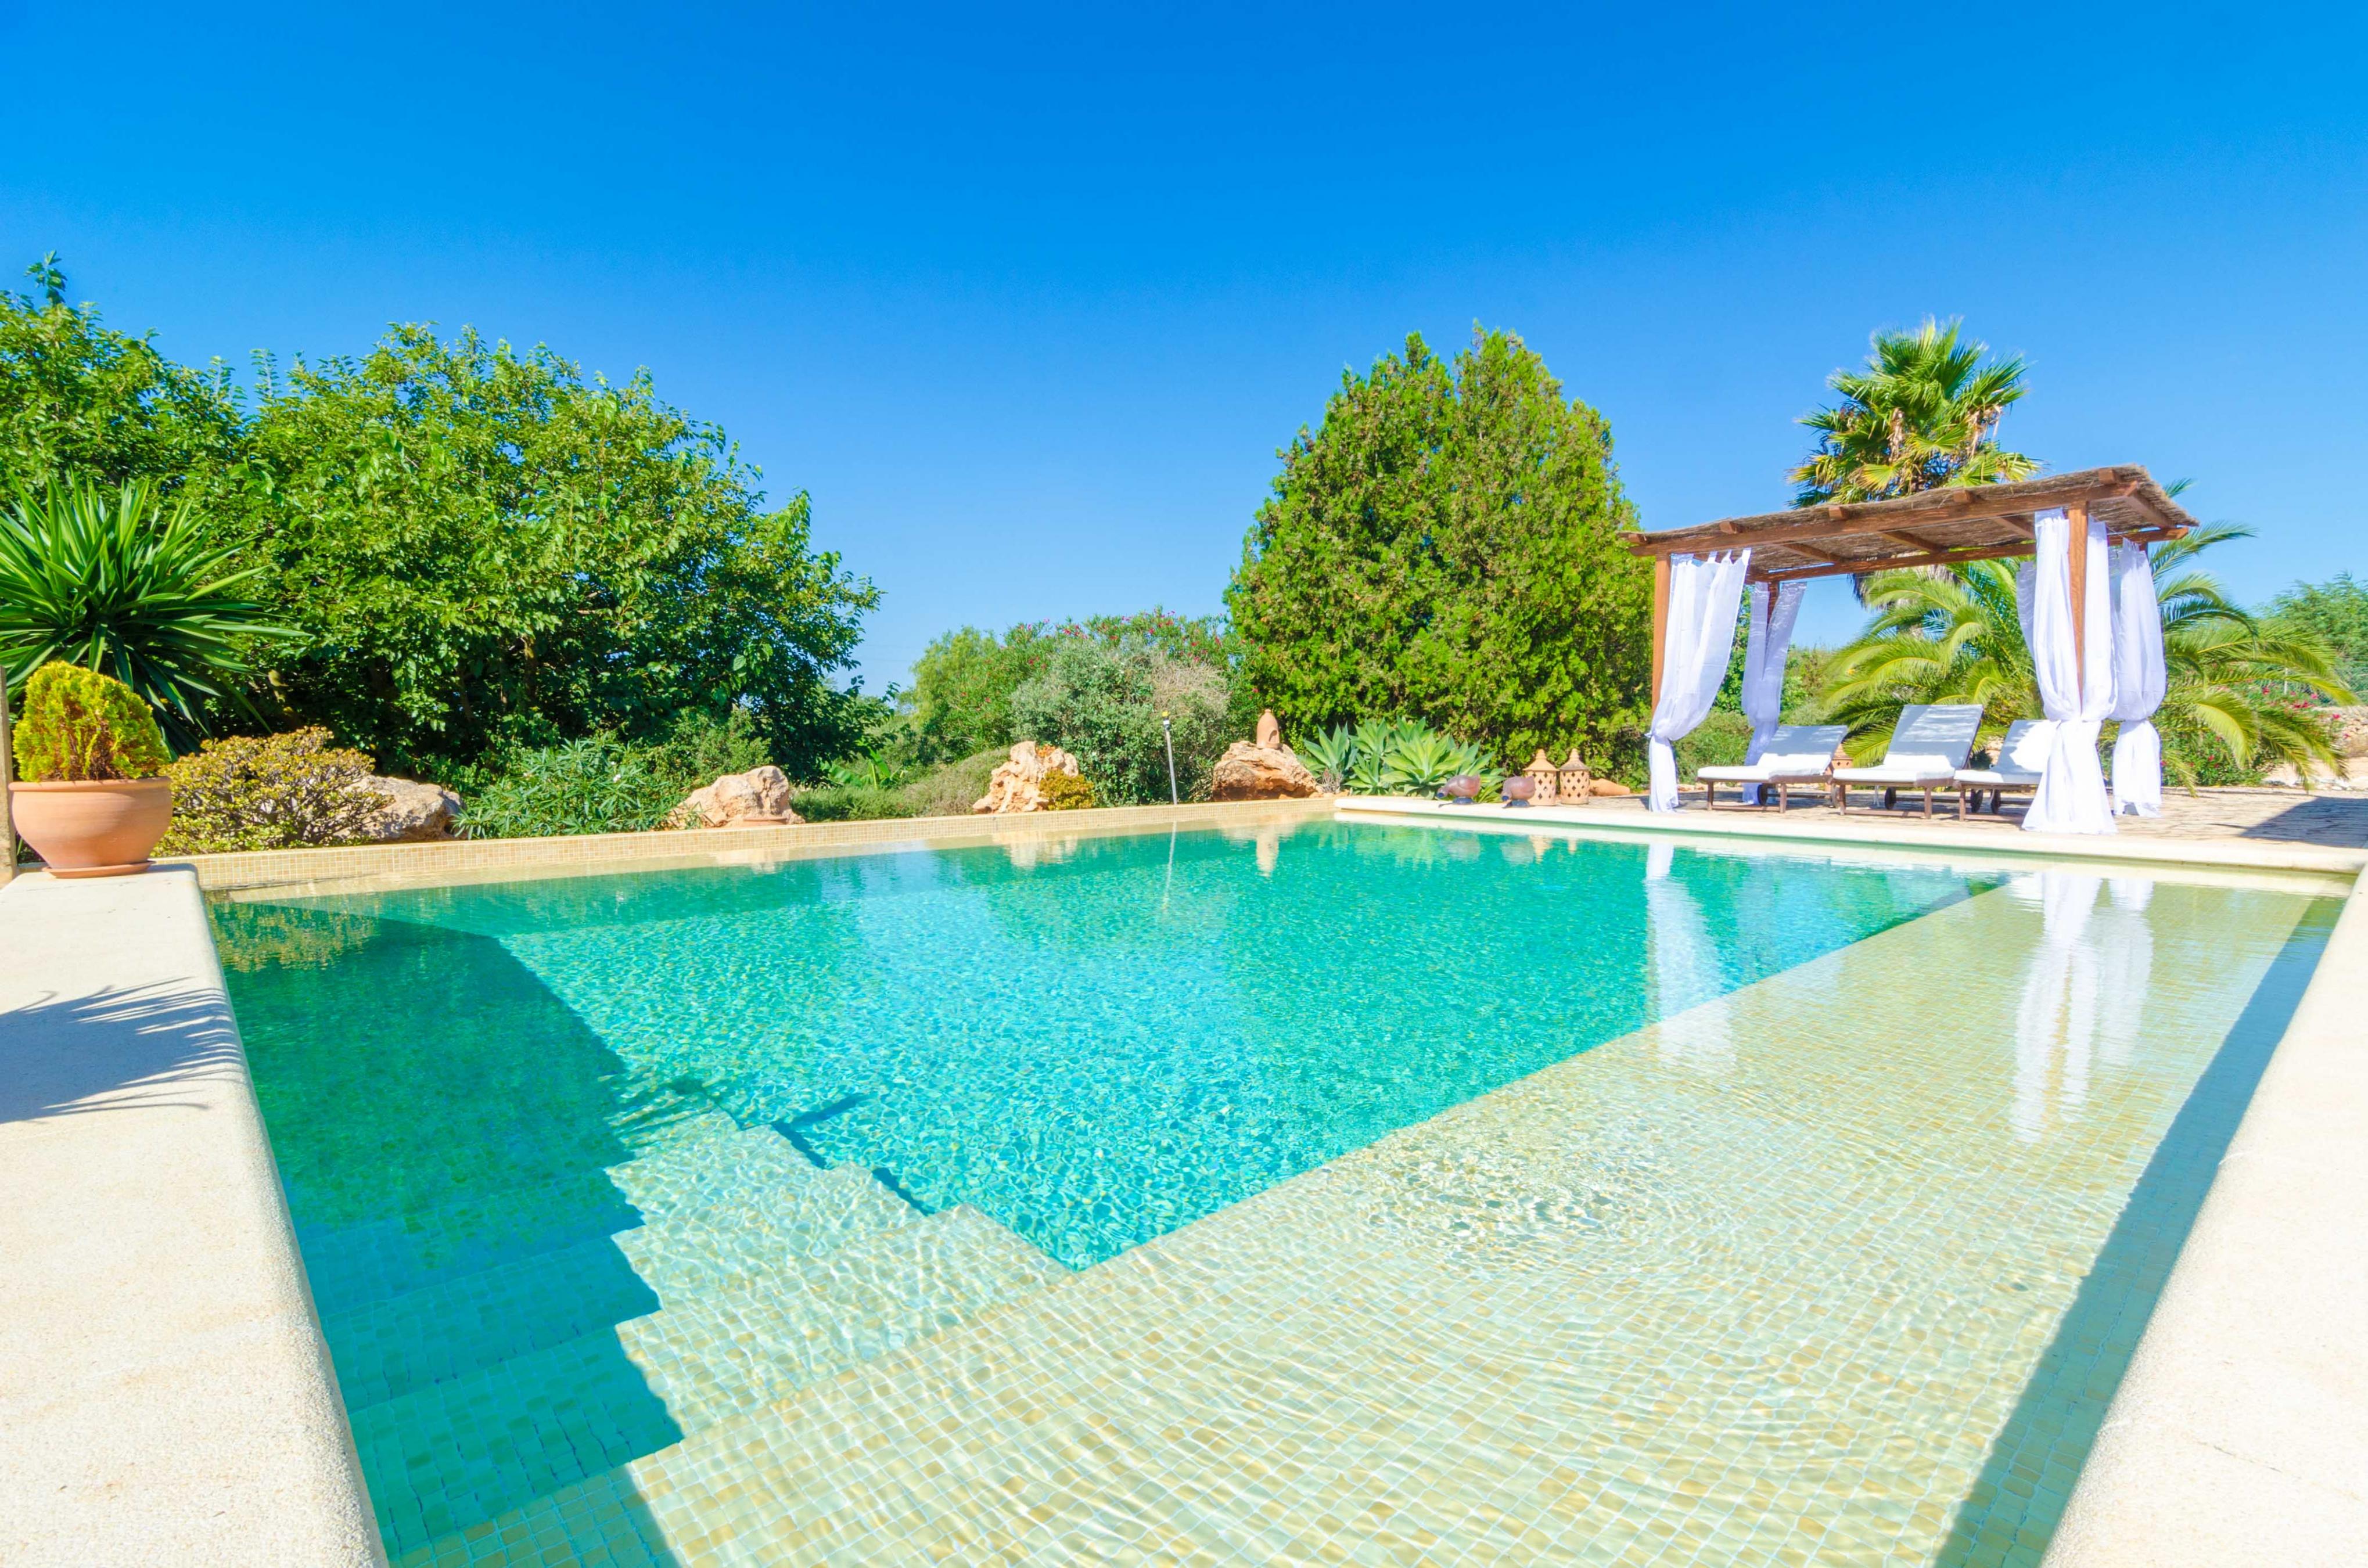 Property Image 2 - CAN TECO - Villa with private pool in PORTO CRISTO. Free WiFi